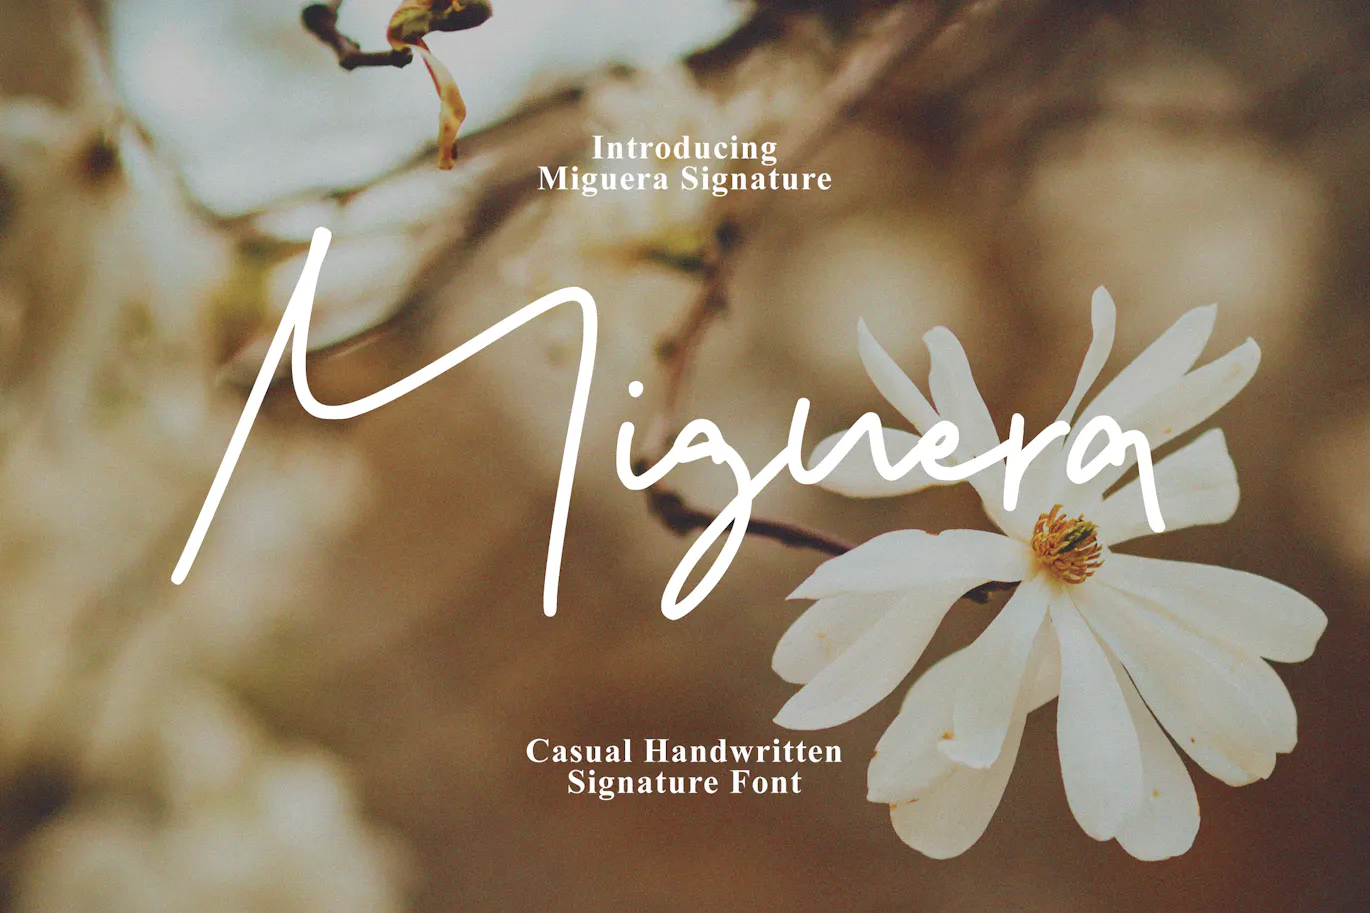 漂亮的手写签名风格装饰字体 Miguera - Casual Handwritten